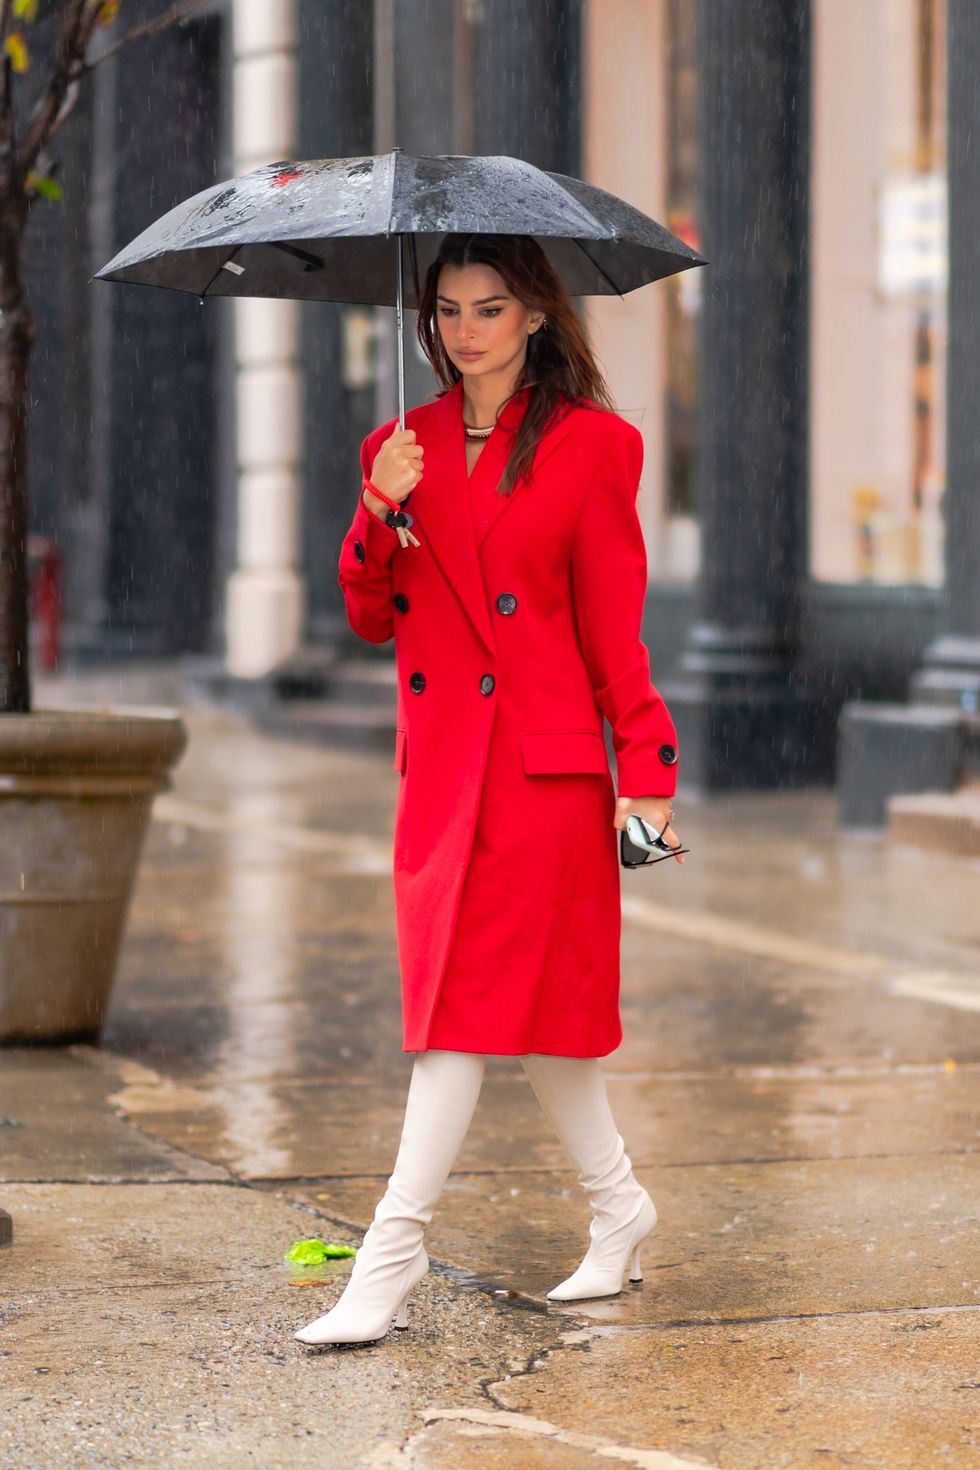 partícula Inclinado espiral Emily Ratajkowski con abrigo largo rojo y botas altas blancas